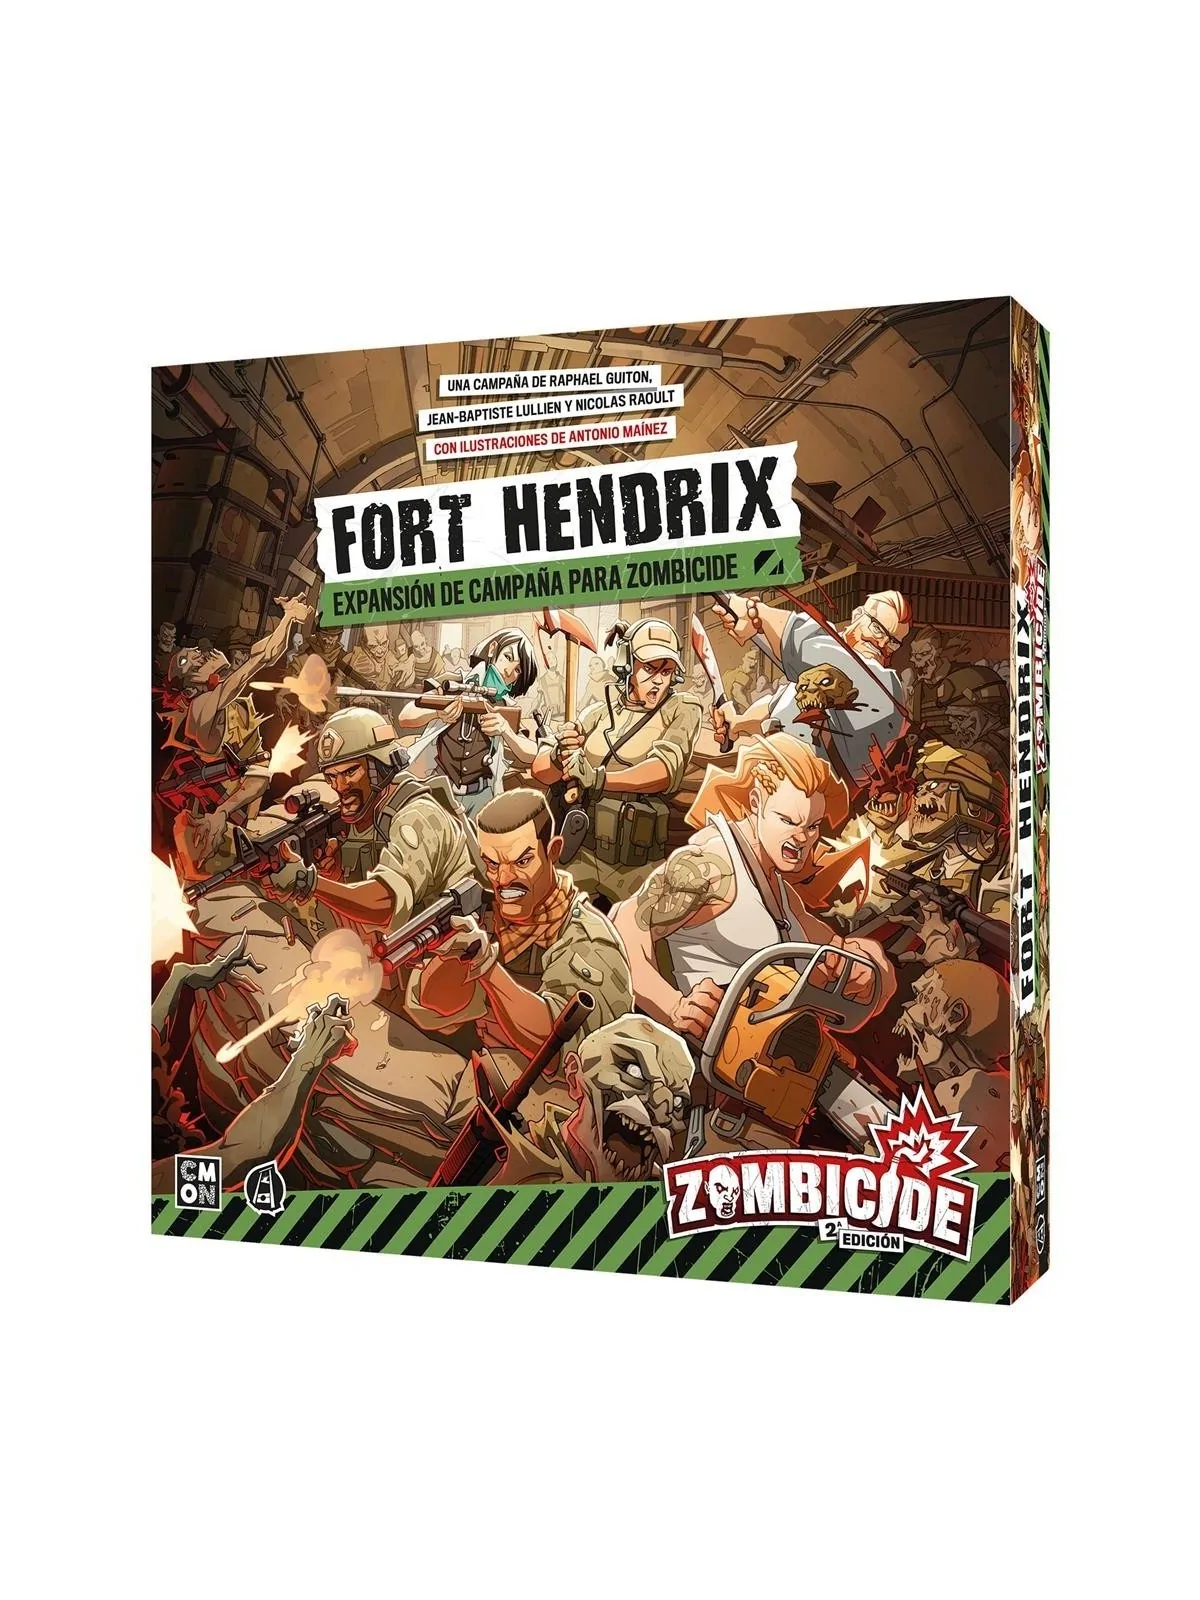 Comprar Zombicide Segunda Edición Fort Hendrix barato al mejor precio 